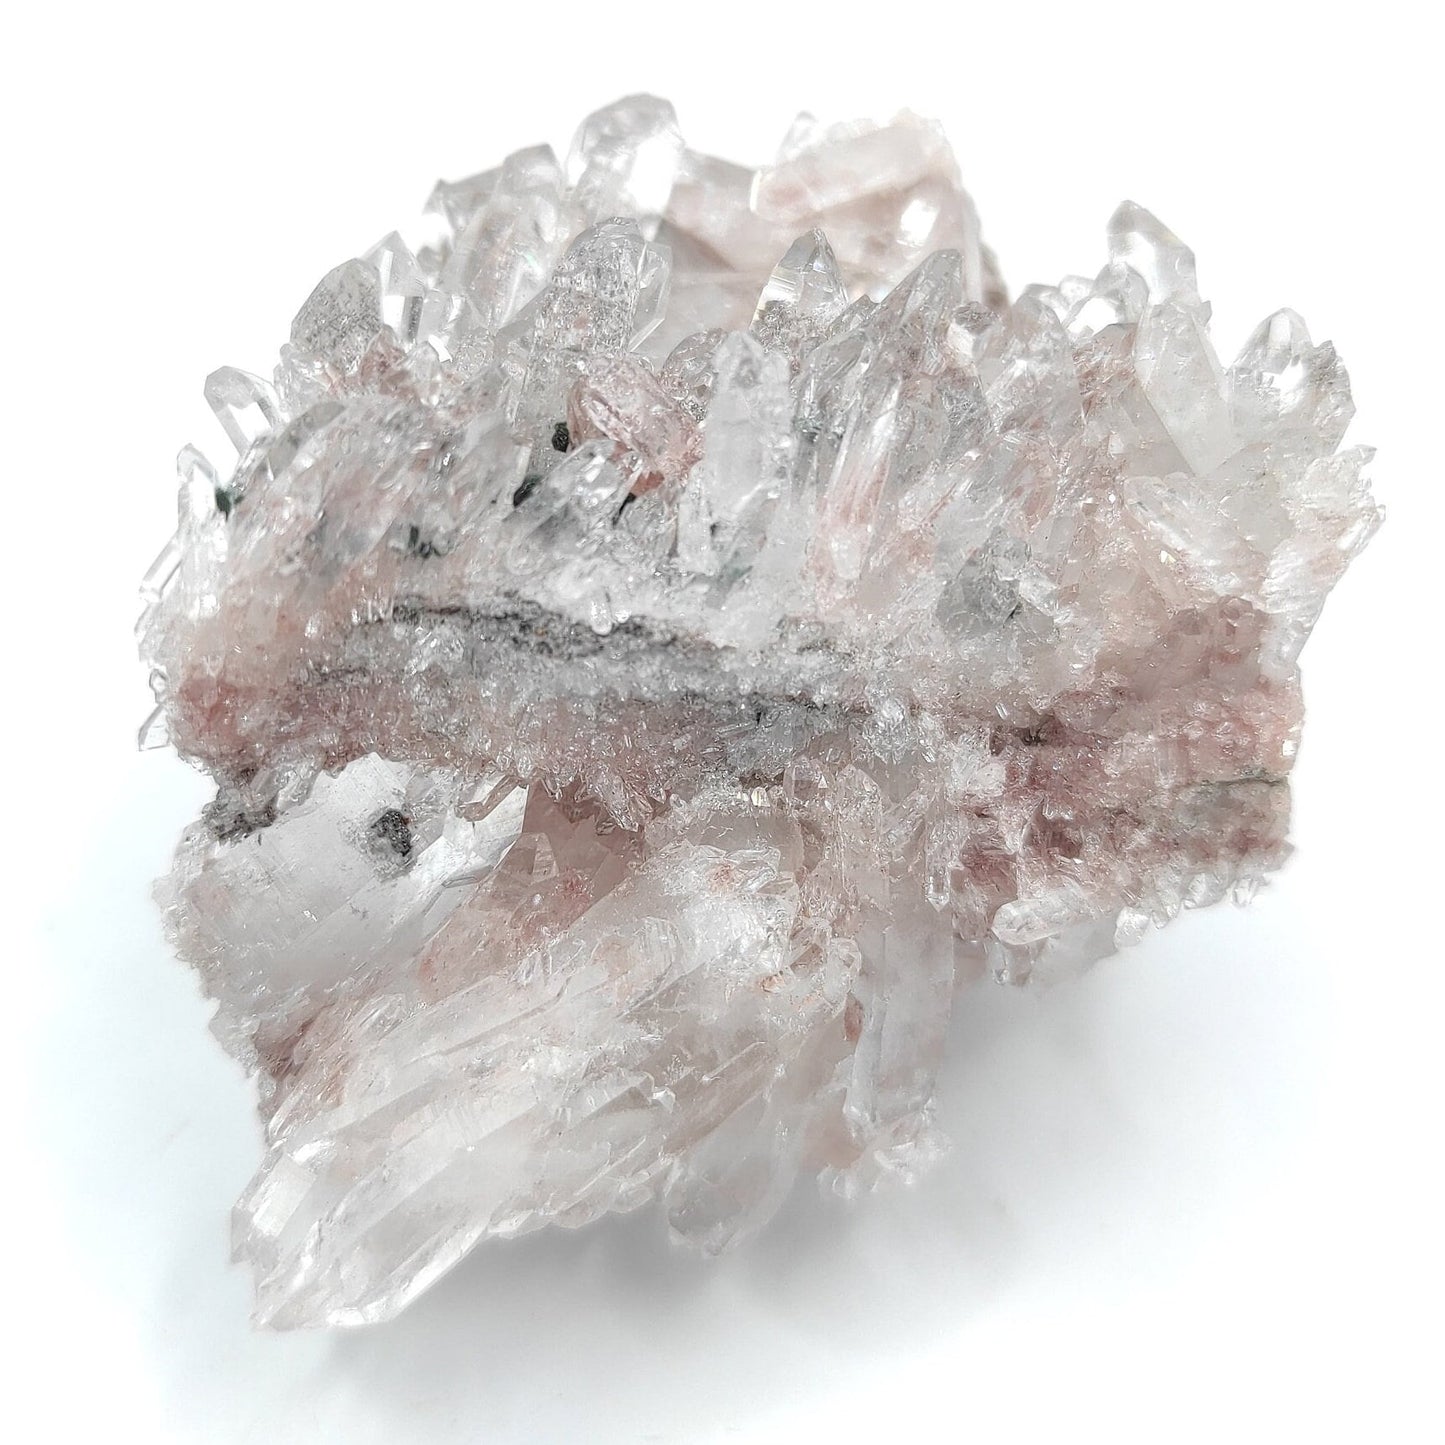 91g Natural Pink Lithium Coated Quartz Crystal - Bolivar, Santander, Colombia - Pink Quartz Cluster - Crystallized Quartz Mineral Specimen